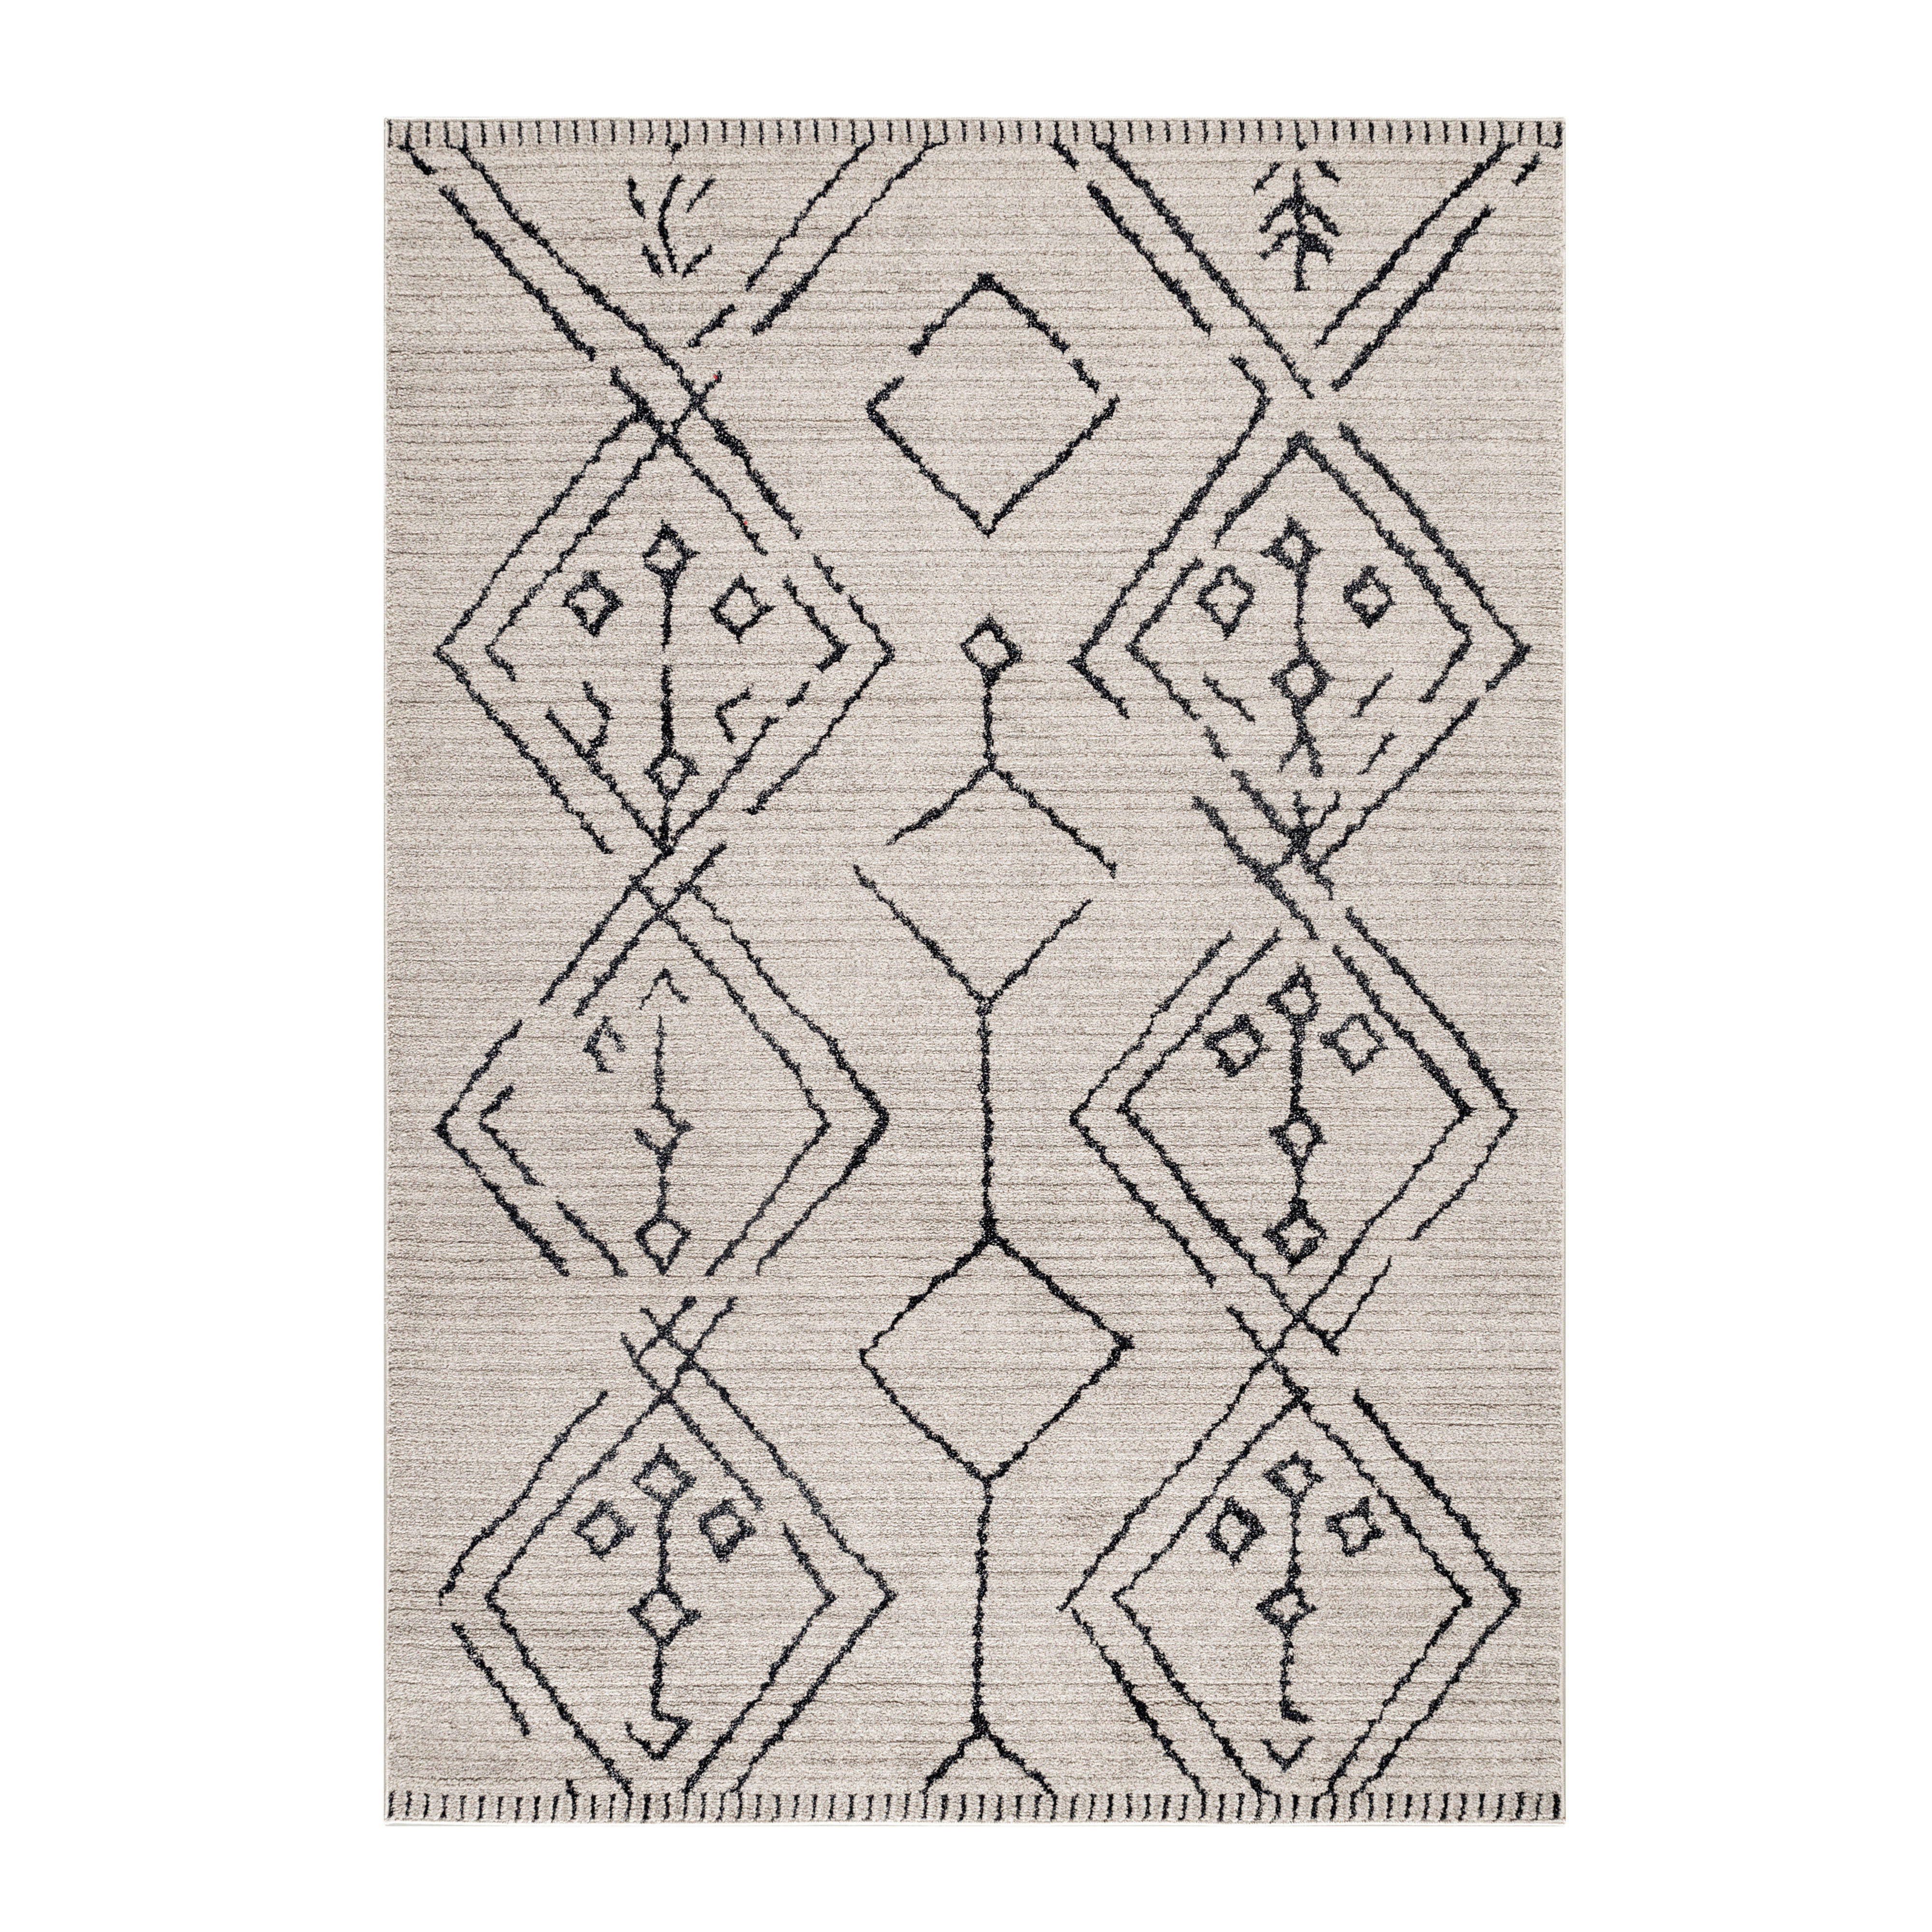 WEBTEPPICH 80/150 cm Tasa  - Beige, Design, Textil (80/150cm) - Novel